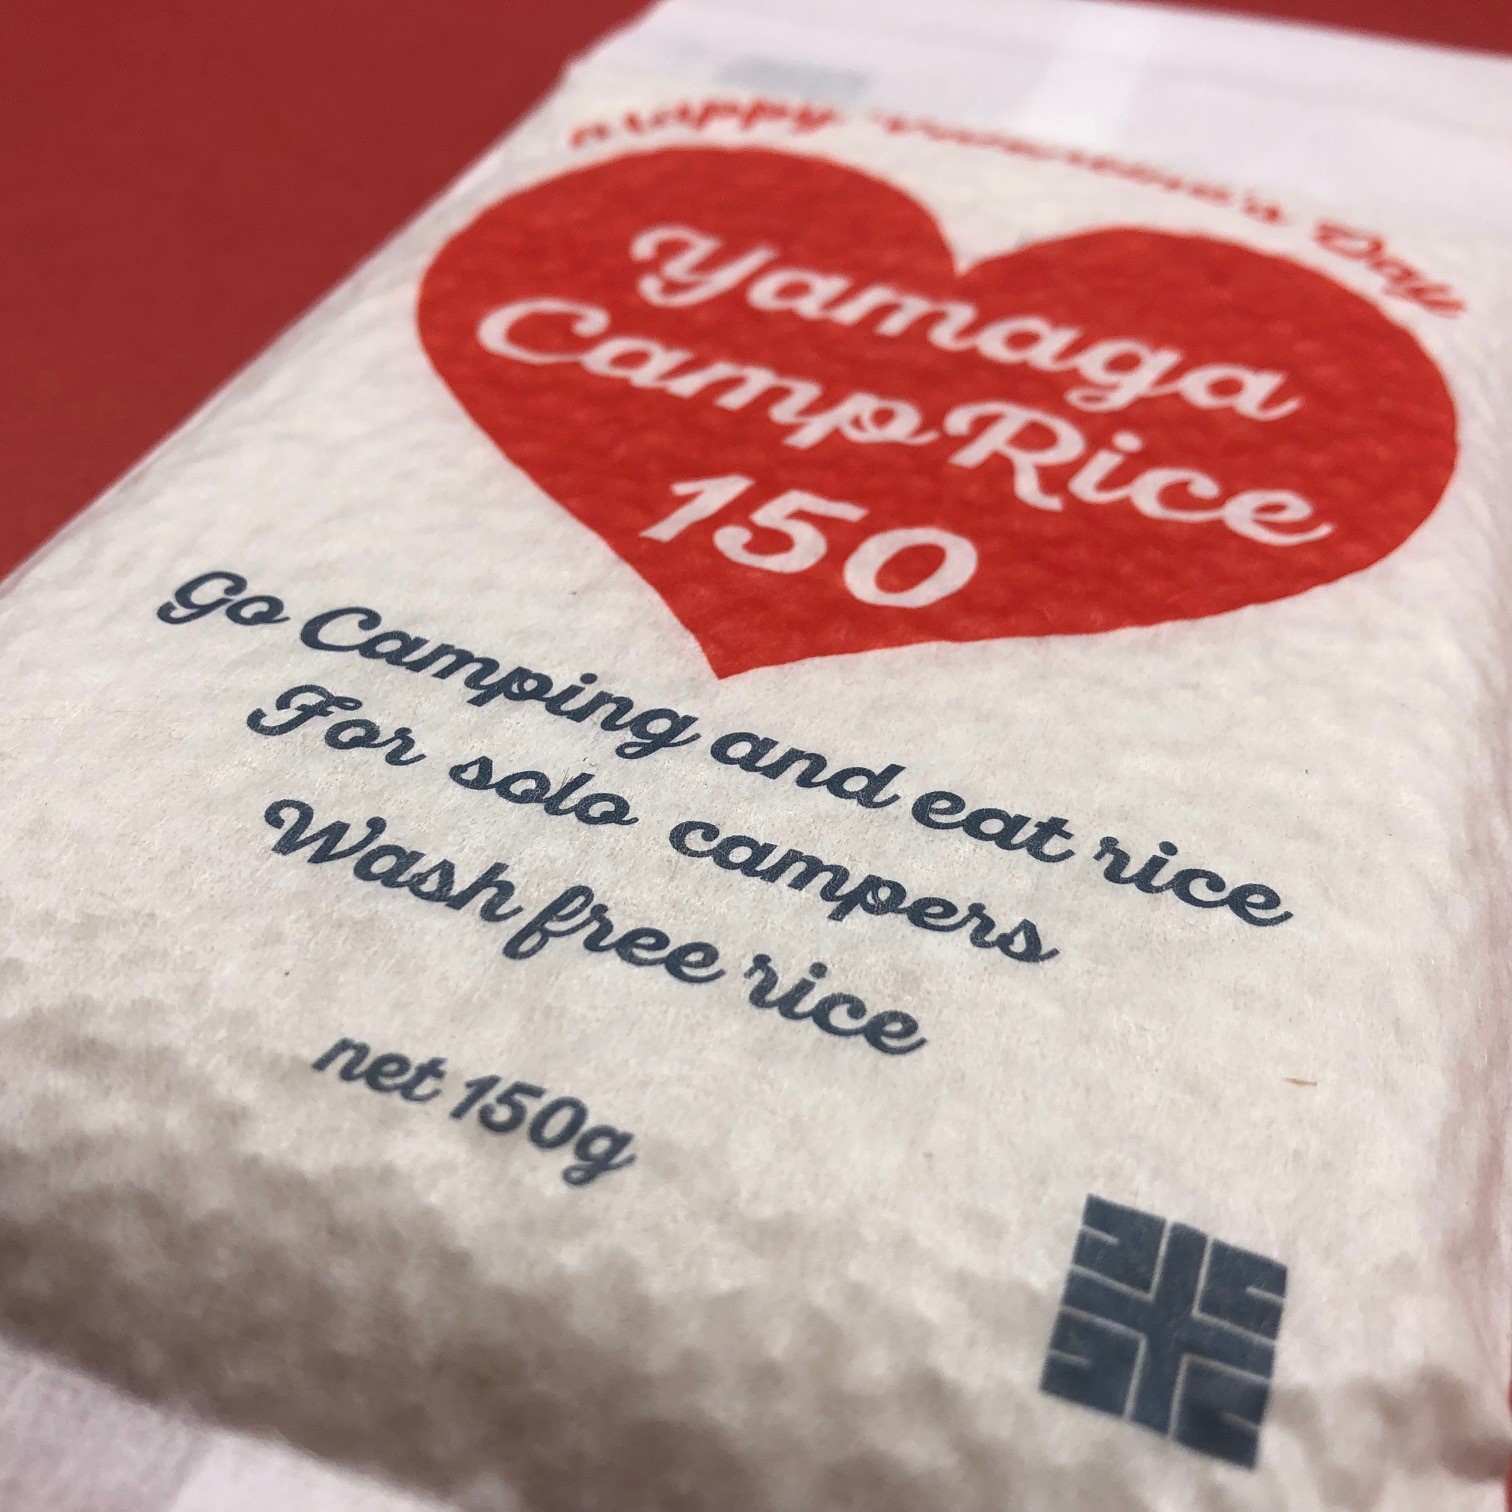 キャンプ女子に使って欲しいバレンタインデー限定パッケージのyamaga camp rice 150